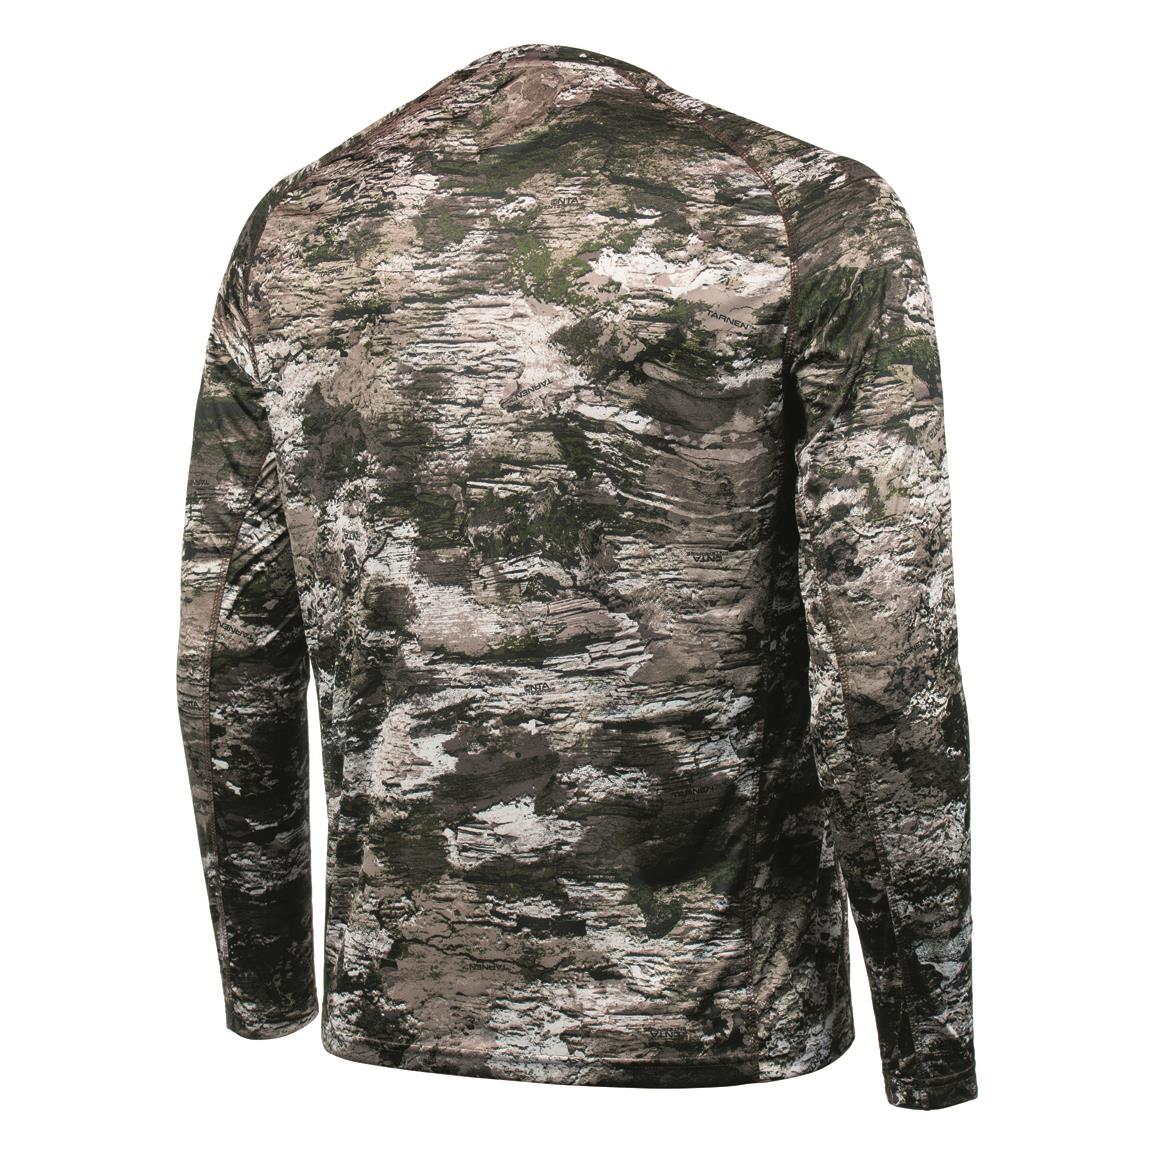 Browning Woven Upland Hunting Shirt - 723454, Camo & Shooting Shirts at ...